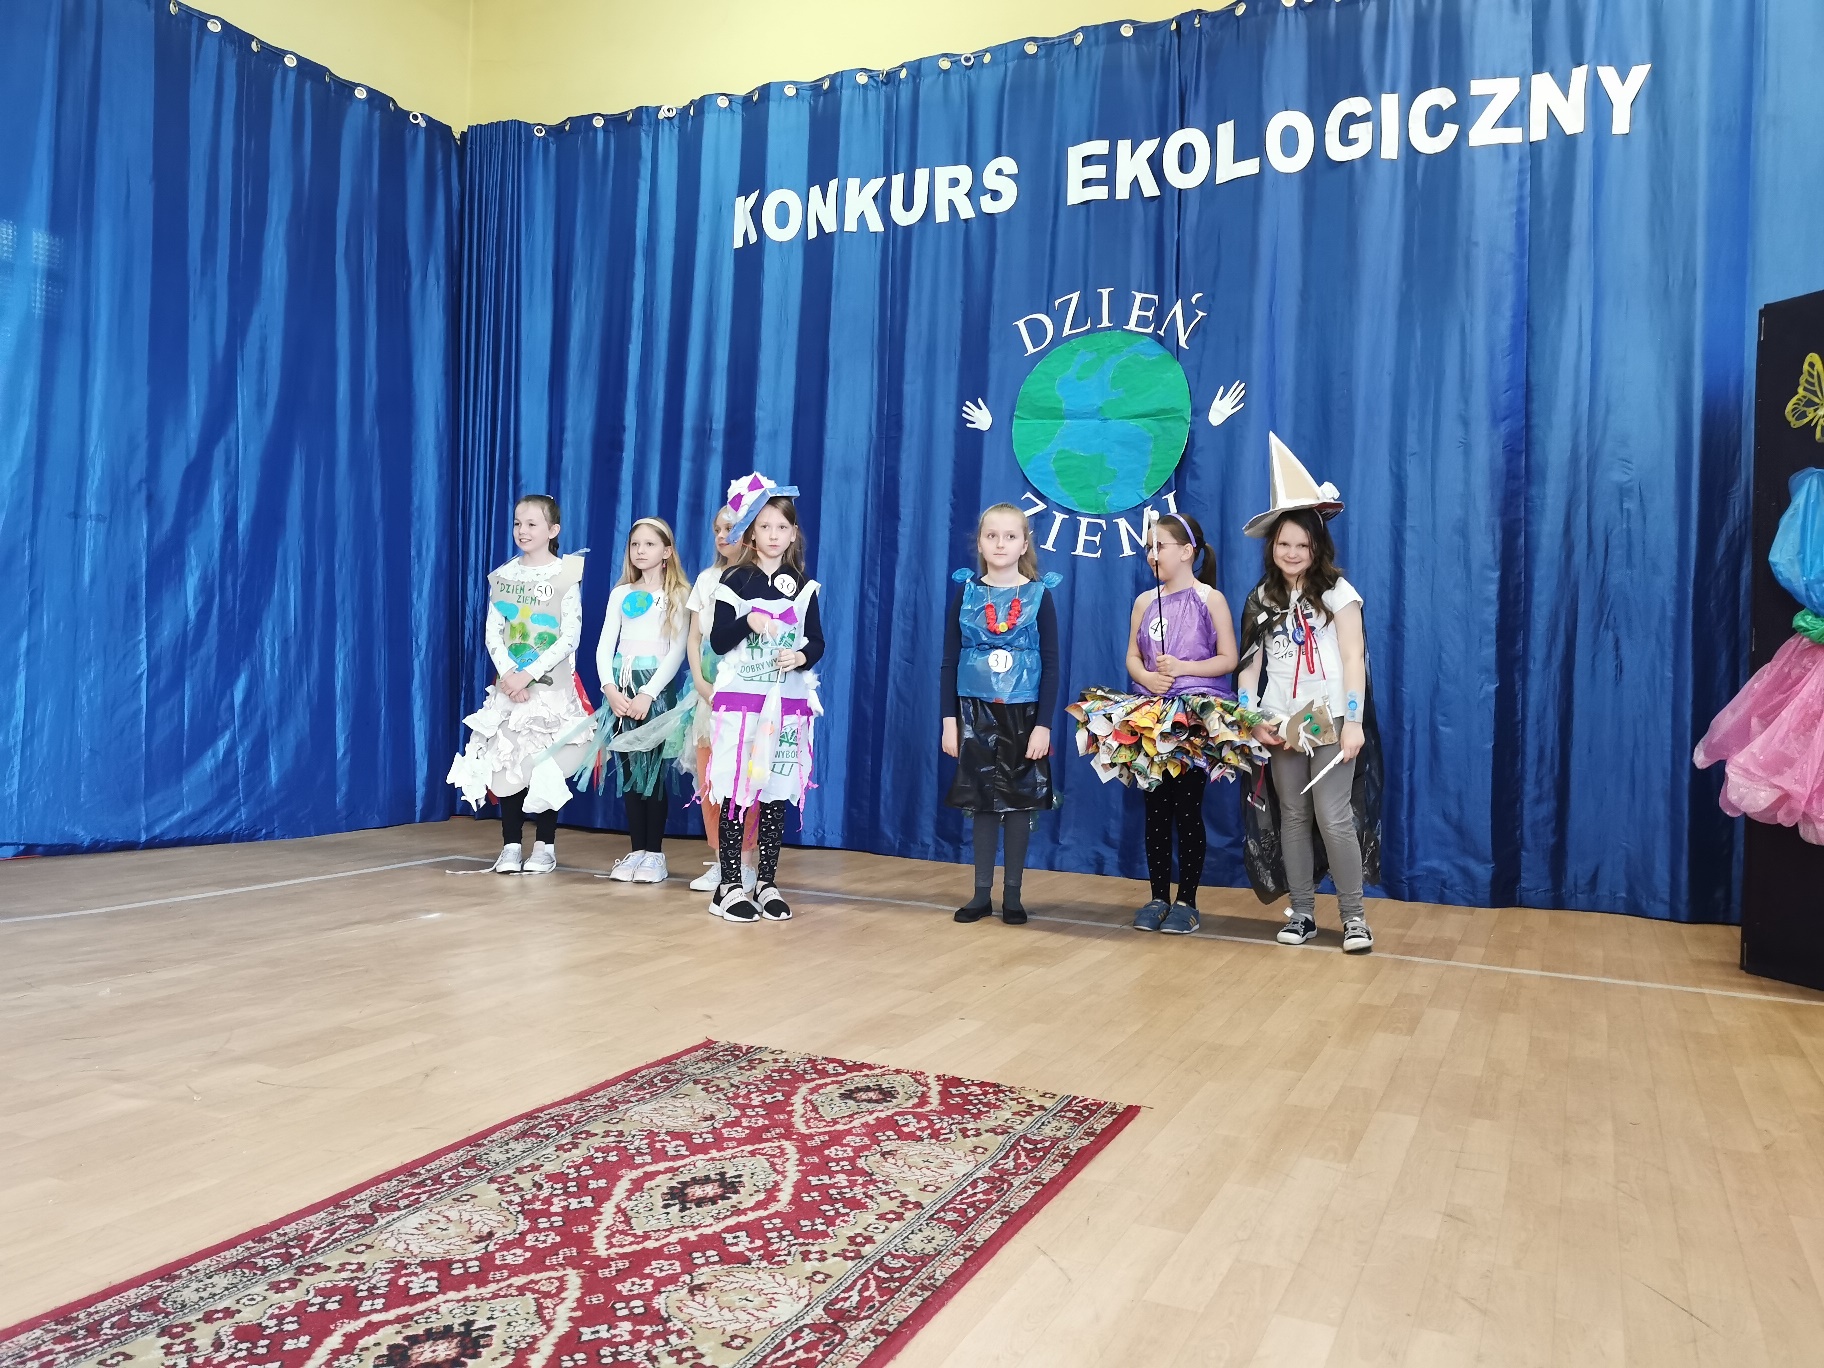 Dzieci w kolorowych strojach stoją przed niebieską kurtyną z napisem Konkurs ekologiczny i obrazem Ziemi